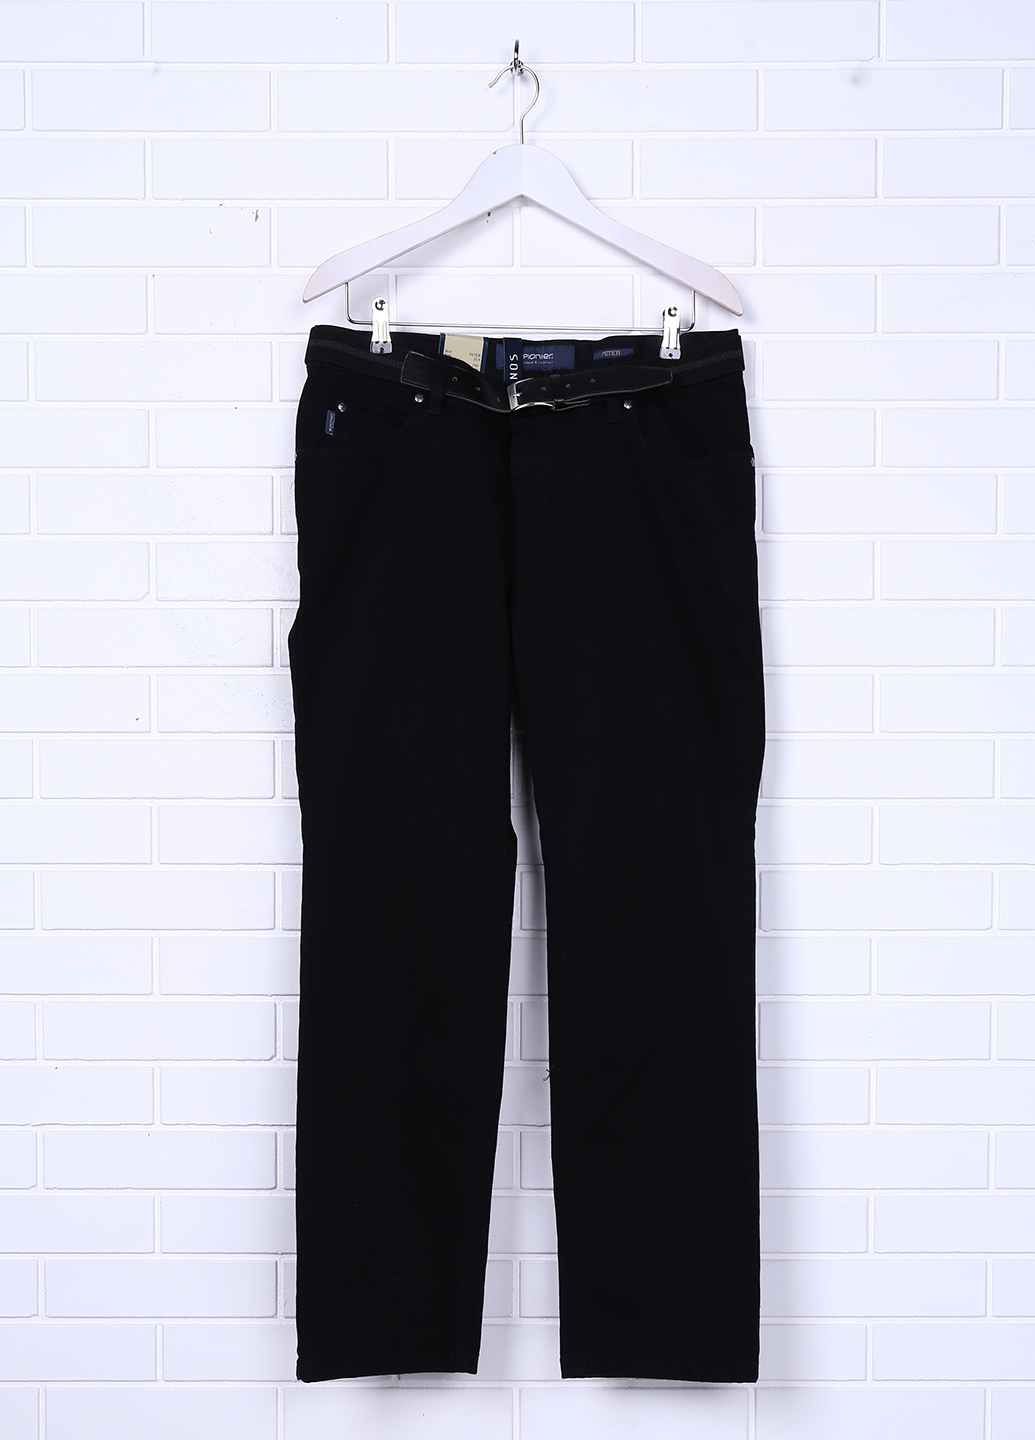 Мужские джинсы Pioneer 36/36 Черный (2900054544018)